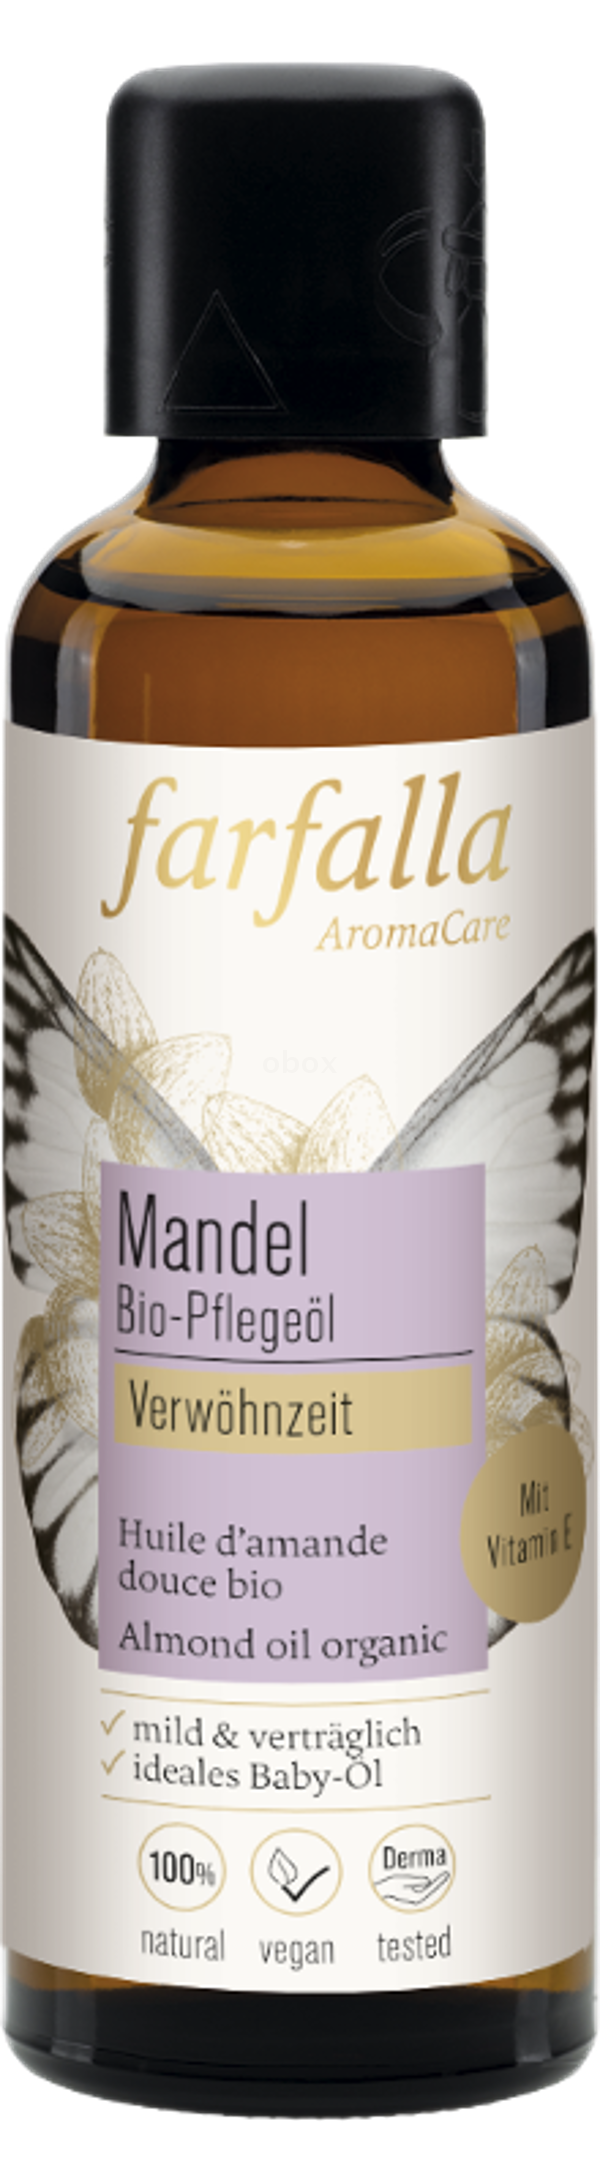 Produktfoto zu Mandel Pflegeöl